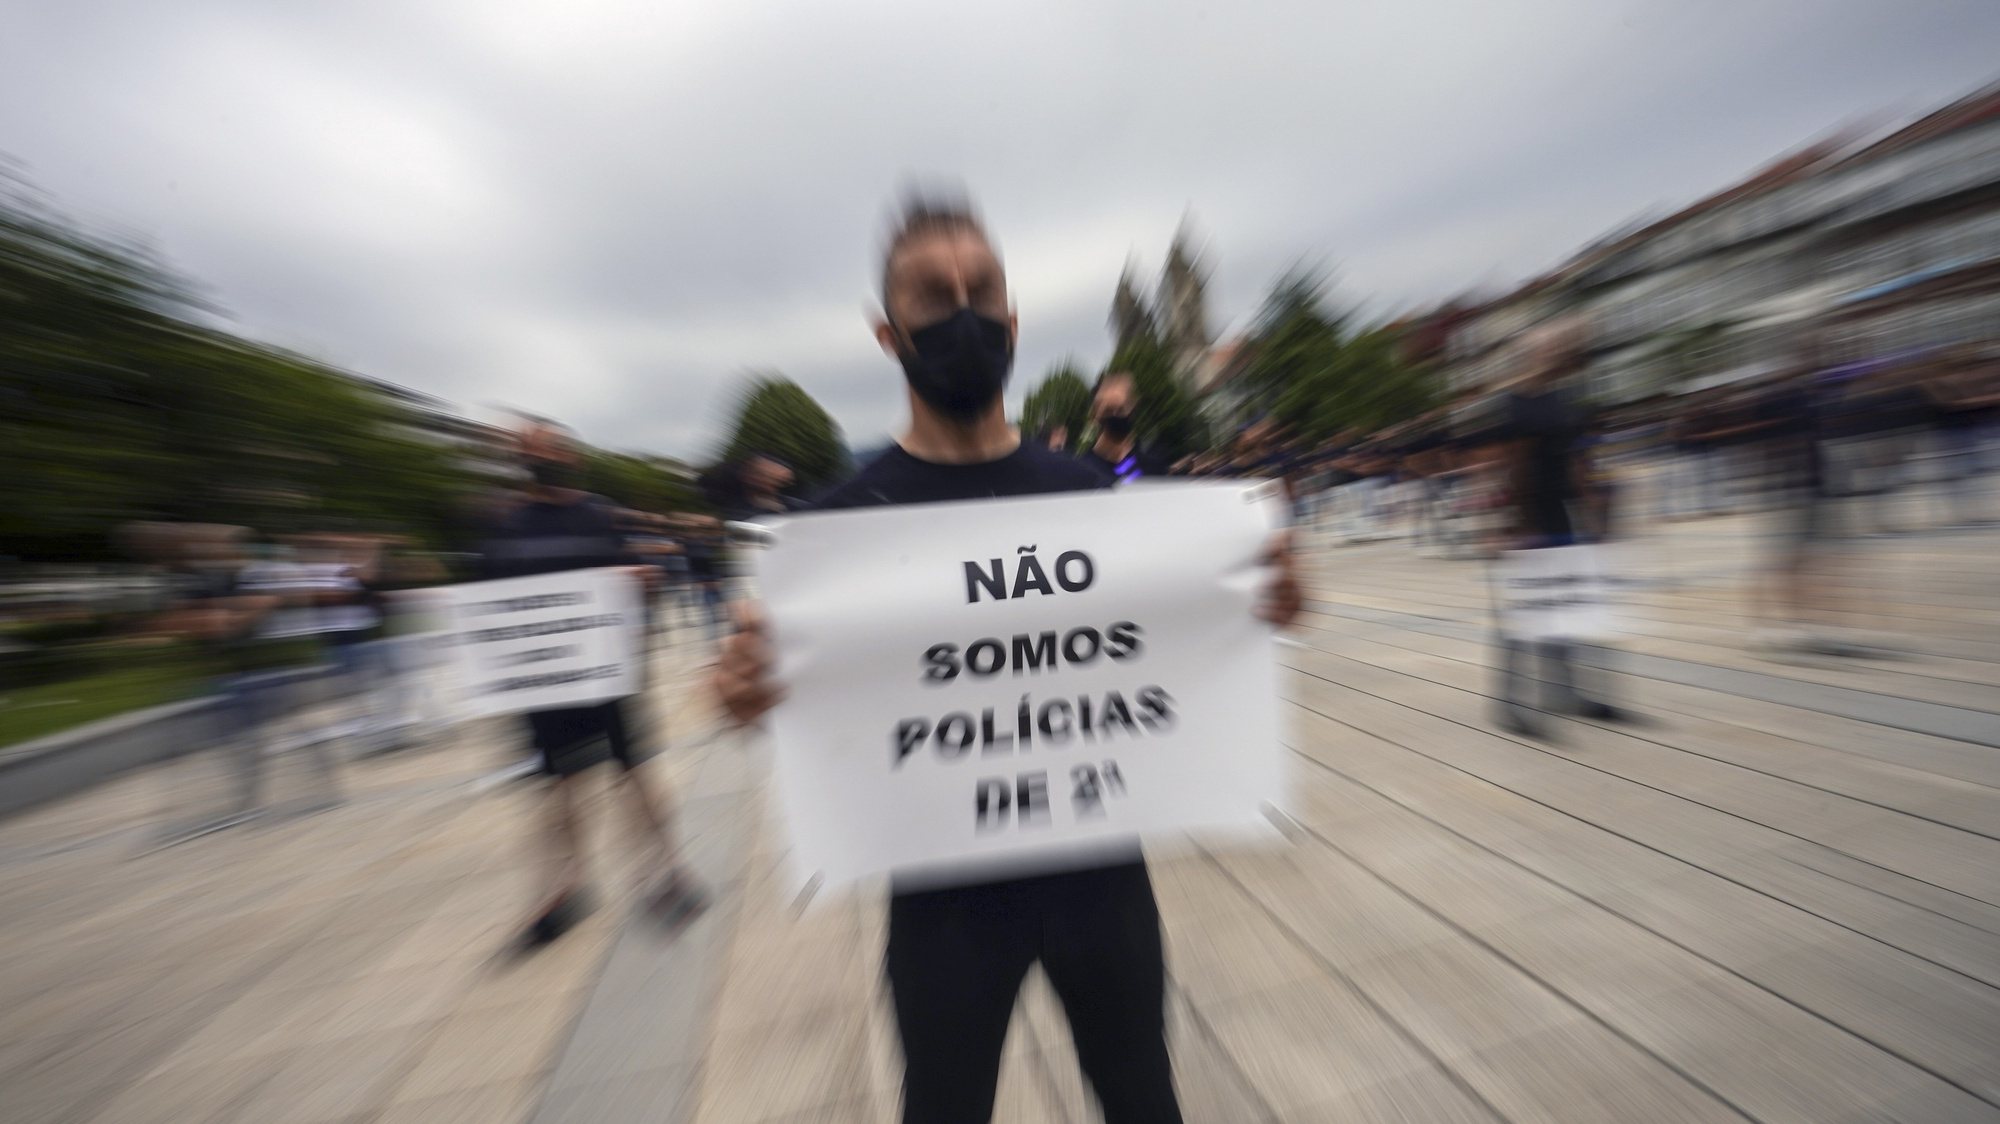 Cerca de 300 polícias participam na marcha silenciosa de polícias por um subsídio de risco justo que terminou em frente ao edifício do Comando Distrital da PSP de Braga, 20 de julho de 2021. HUGO DELGADO/LUSA